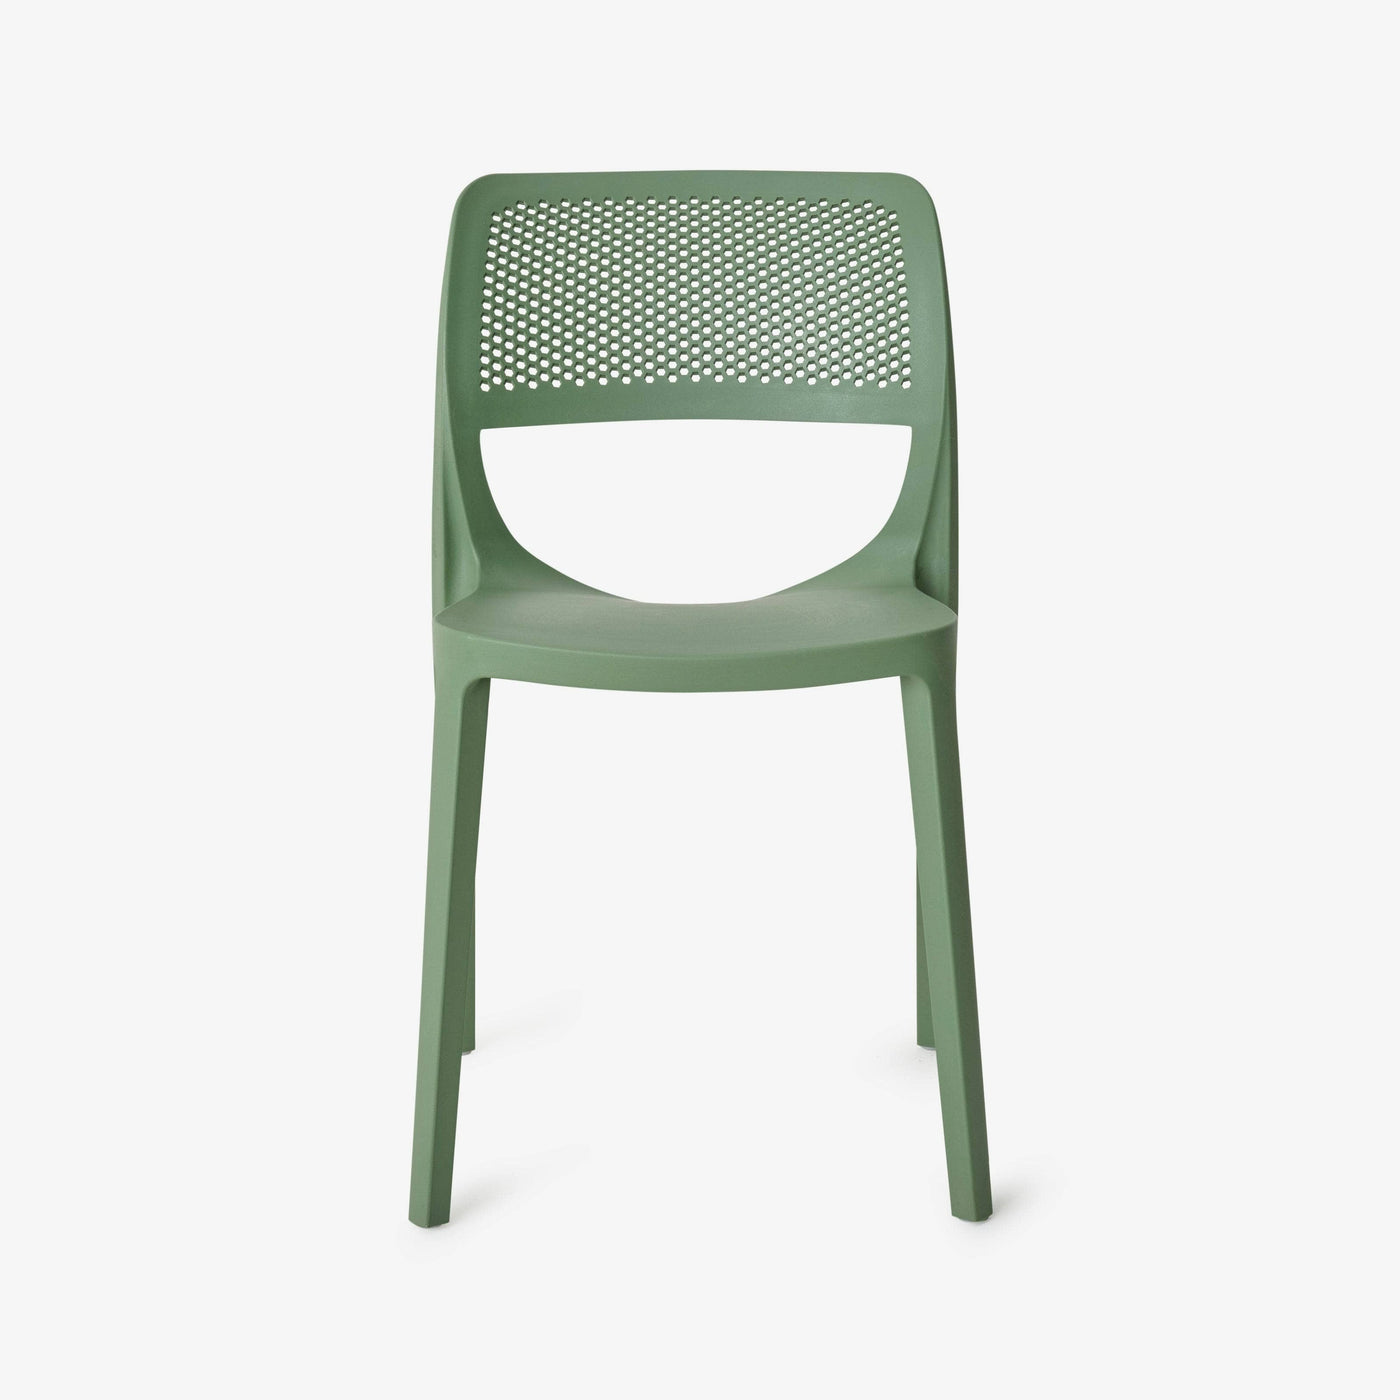 Siena Fiberglass Garden Chair, Green - 1